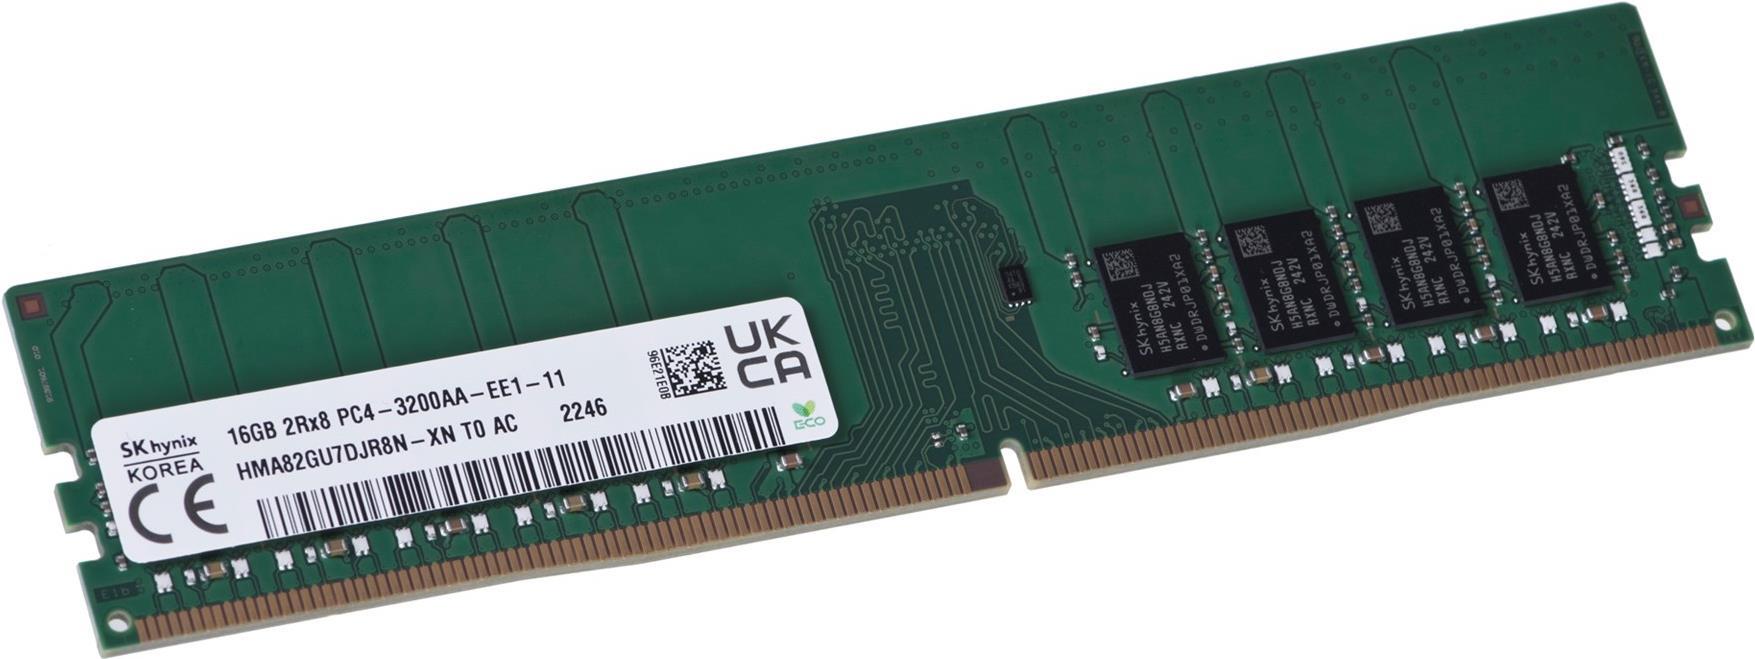 Hynix 16 GB ECC UDIMM DDR4-3200 HMA82GU7DJR8N-XN (HMA82GU7DJR8N-XN)